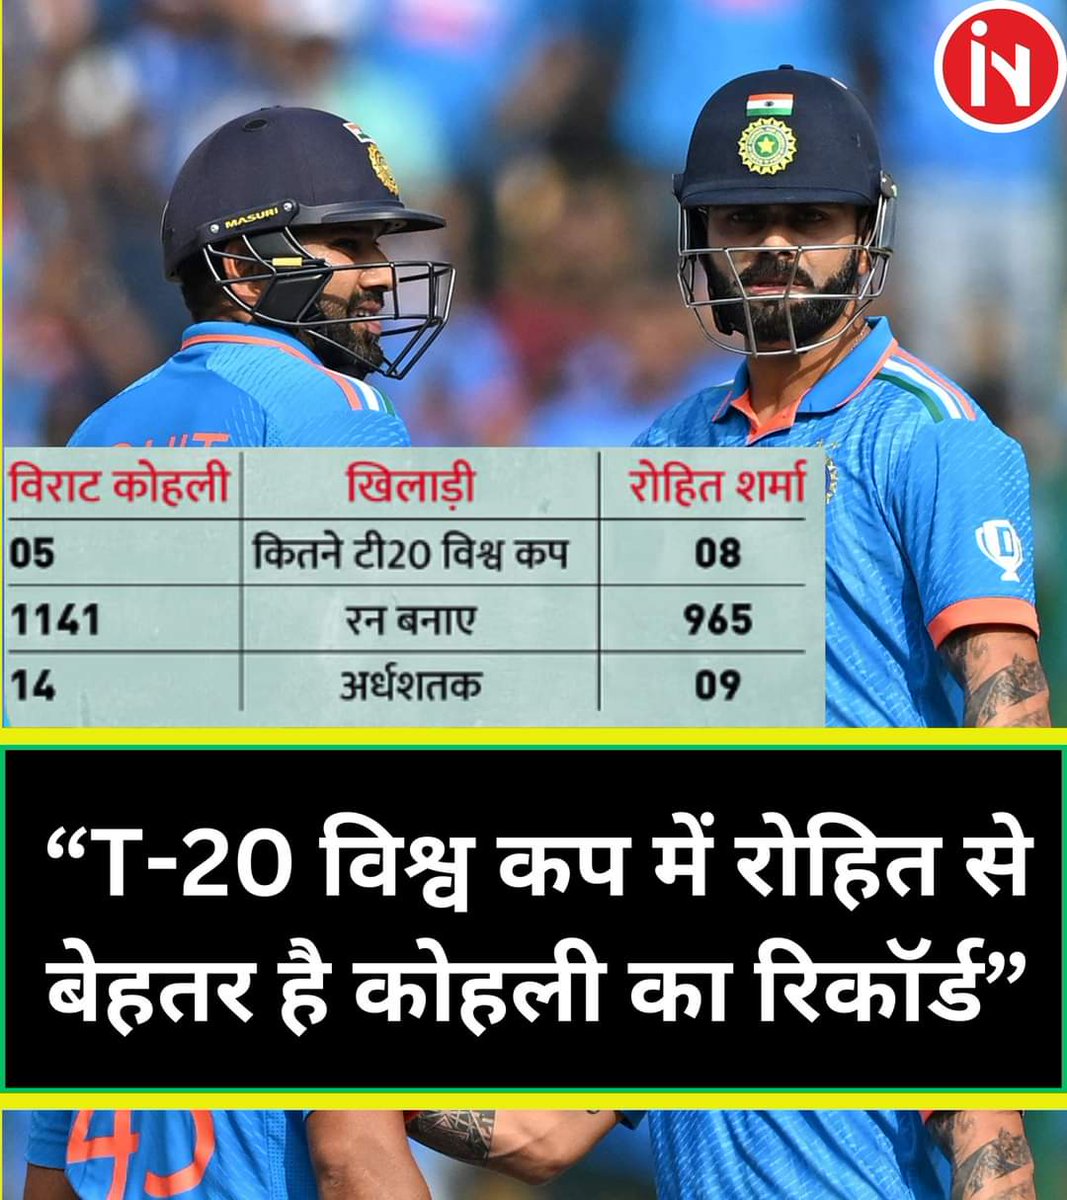 “T-20 विश्व कप में रोहित से बेहतर है कोहली का रिकॉर्ड”
.
.
#T20WorldCup2024 #viratkohli #rohitsharma #RECORD #DailyCricketNews #fbpost #fbvrial #fbcricketnews #cricketfans #SportsUpdates #breakingnews